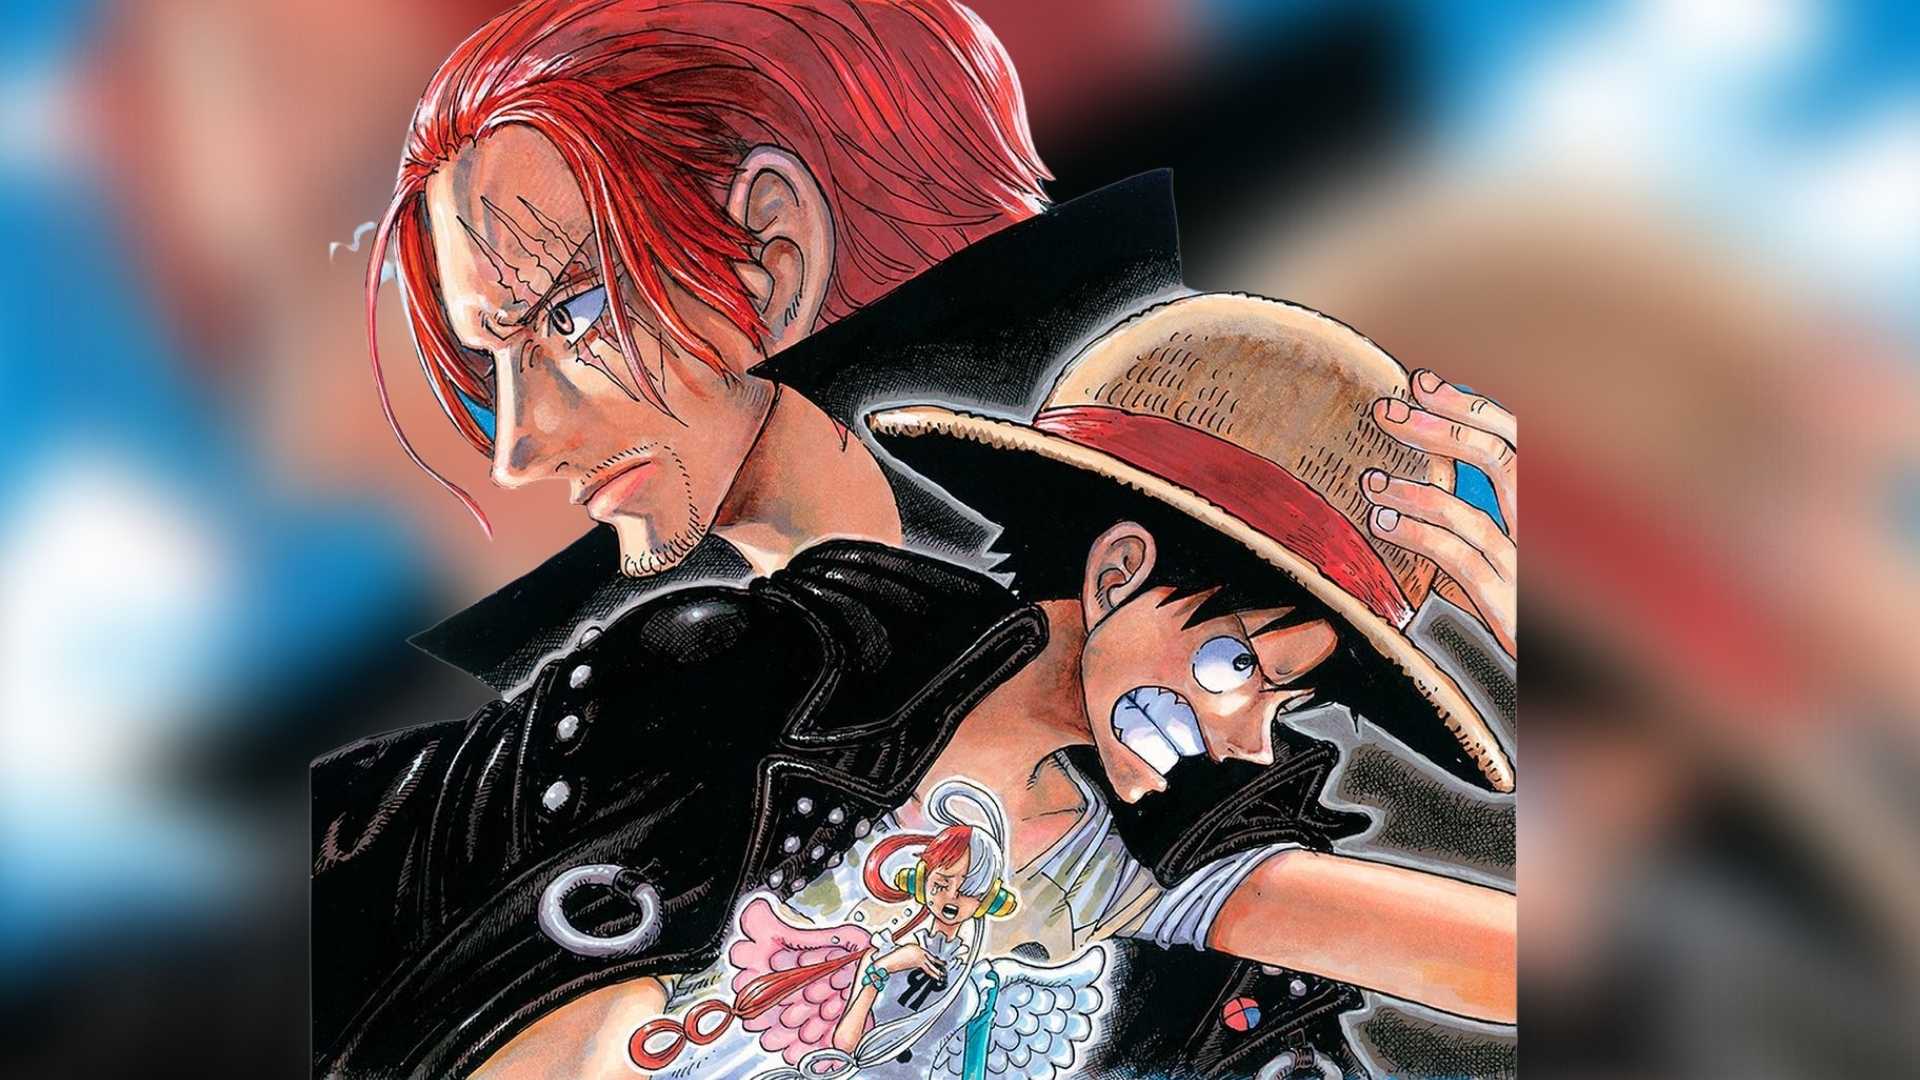 One Piece Film: Red - Na Cinesystem 